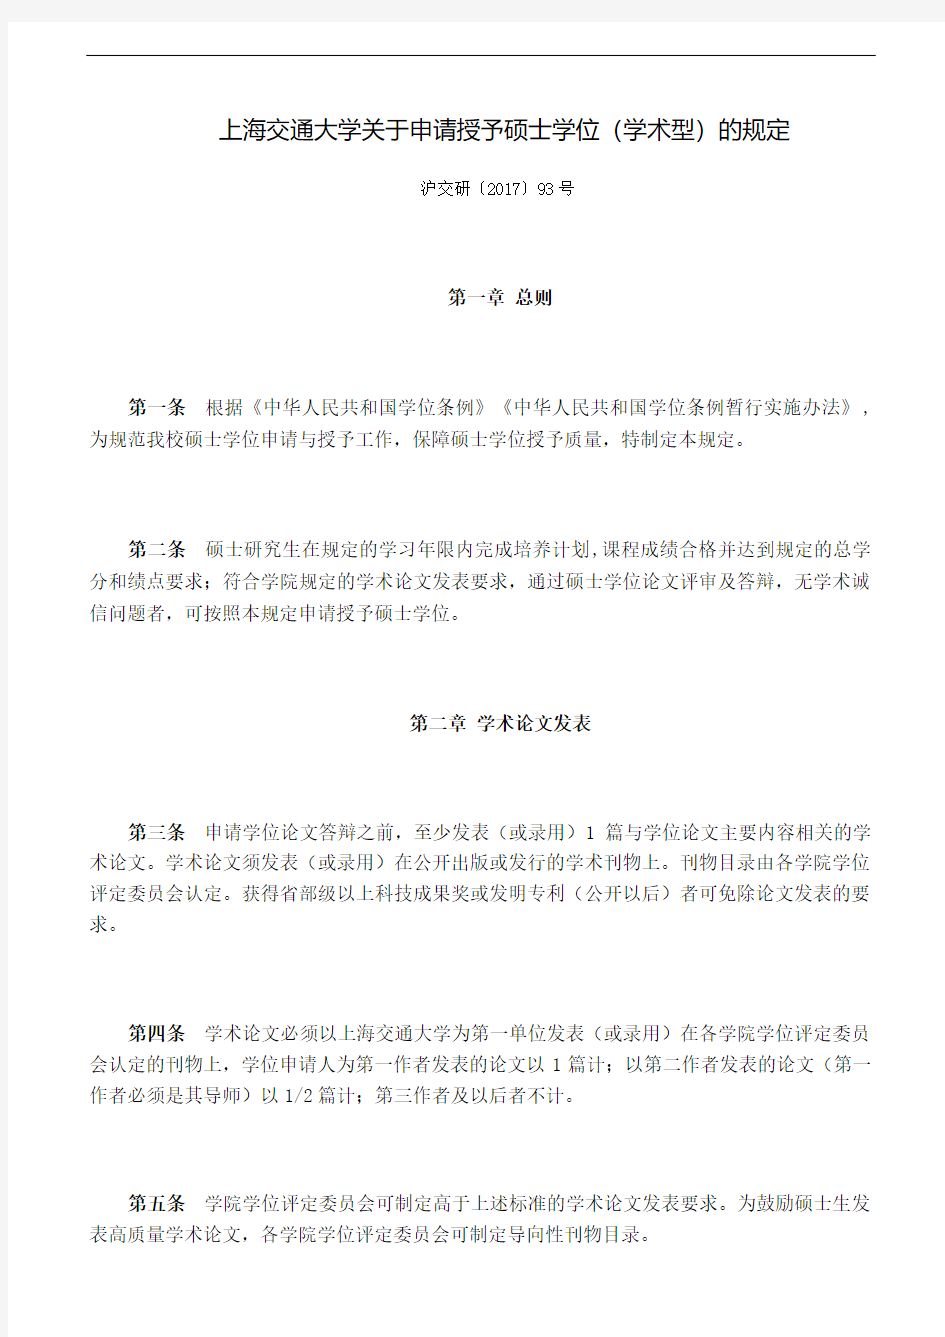 上海交通大学关于申请授予硕士学位(学术型)的规定